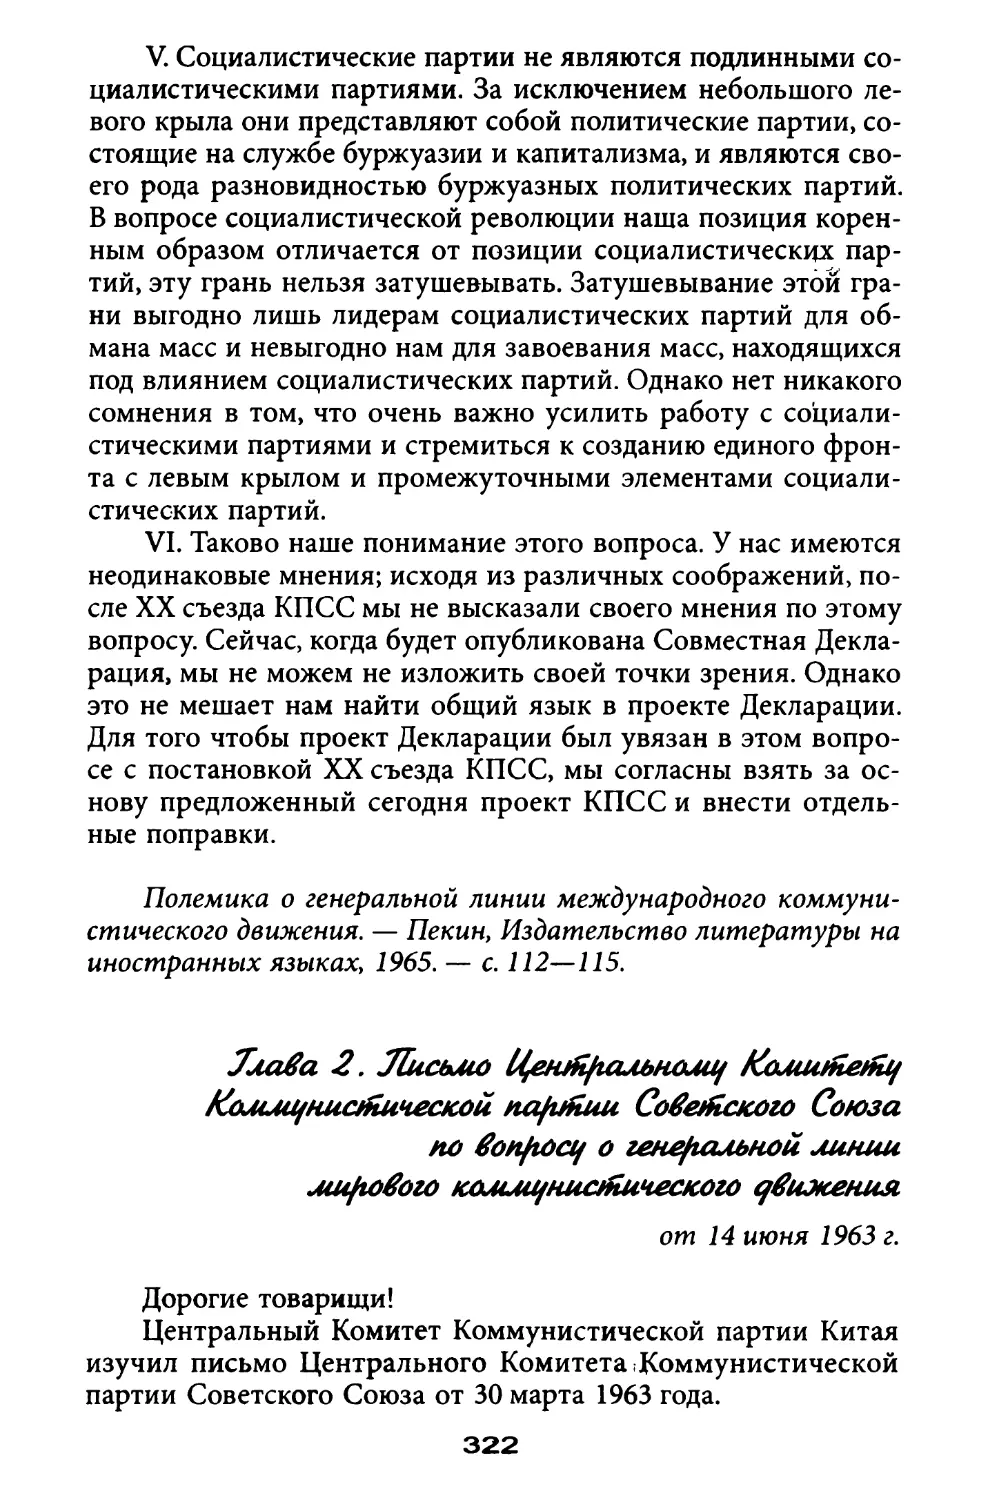 Глава 2. Письмо в ЦК КПСС по вопросу о генеральной линии мирового коммунистического движения